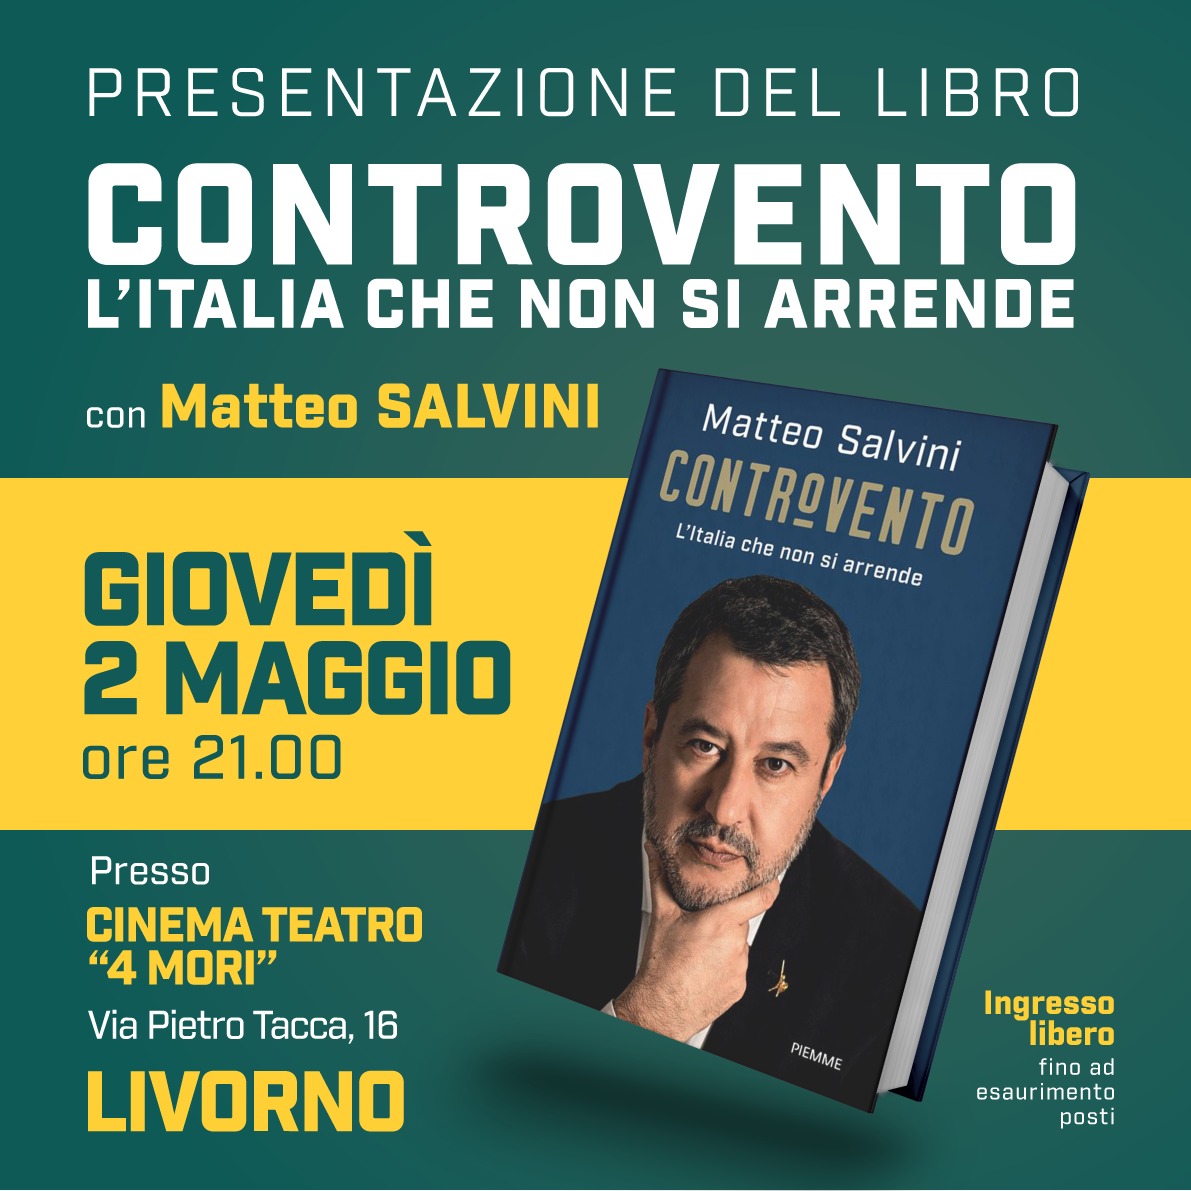 Il 2 MAGGIO prossimo vi aspetto al CINEMA TEATRO 'QUATTRO MORI' alle ORE 21.00 per assistere con voi alla presentazione che il nostro leader #MATTEOSALVINI farà del suo ultimo libro 'CONTROVENTO - L' ITALIA CHE NON SI ARRENDE'. #Livorno facebook.com/share/p/8y3ZKm…